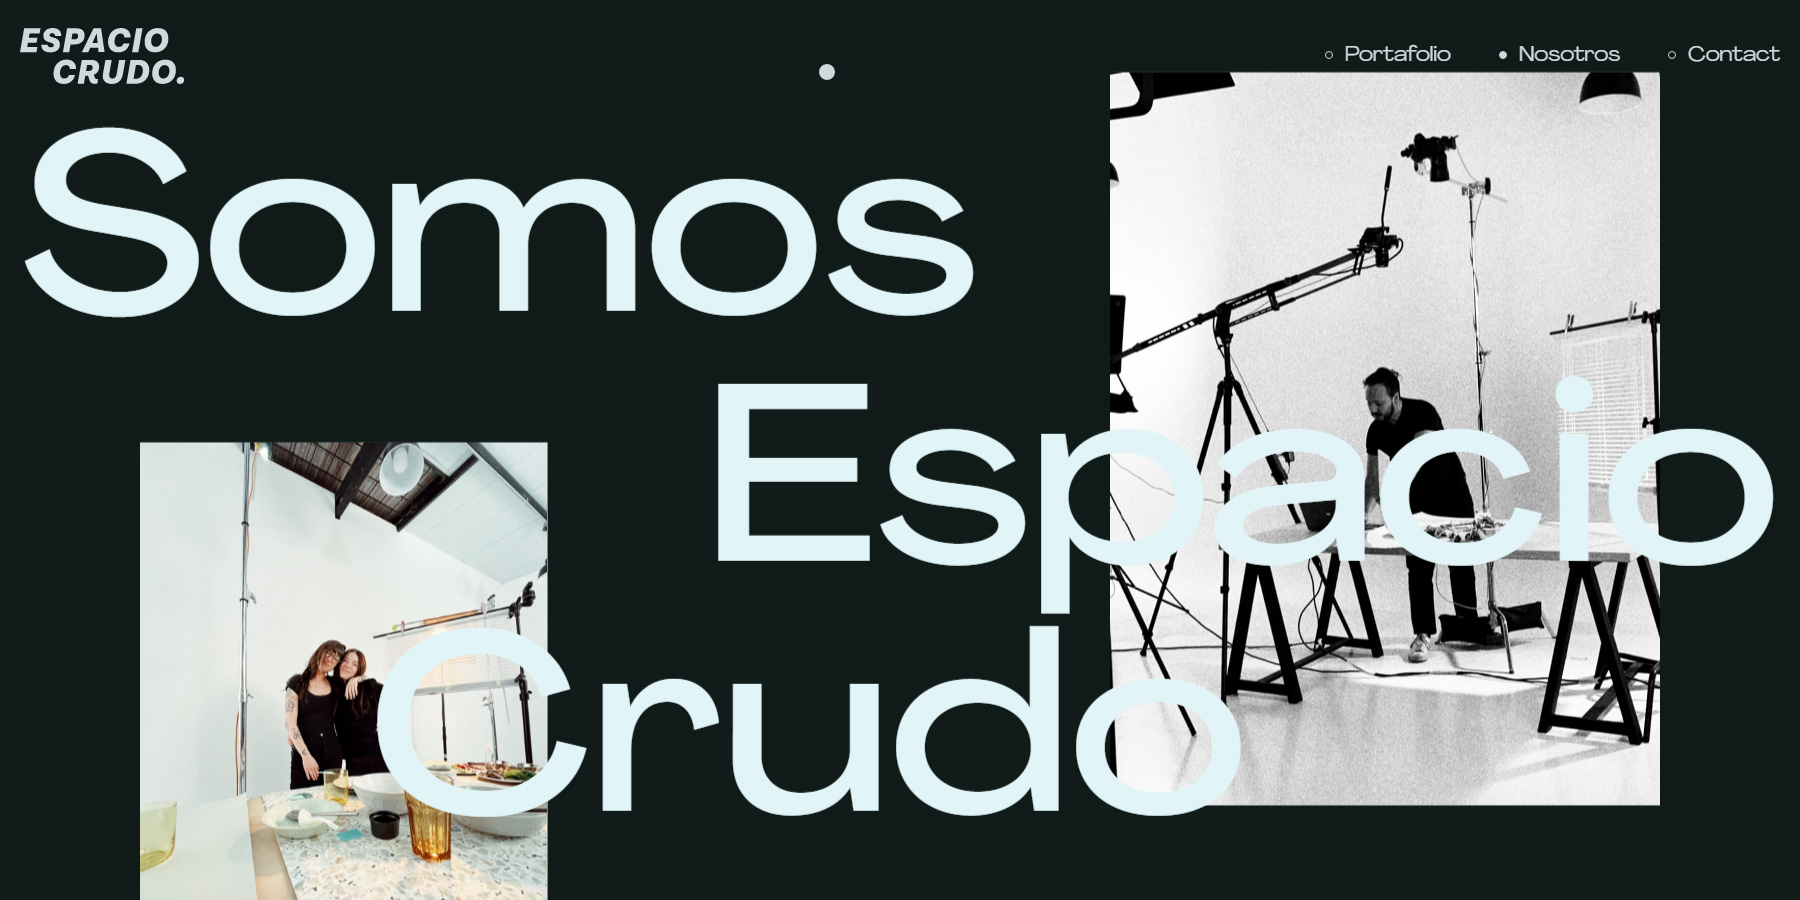 Espacio Crudo - Website of the Day